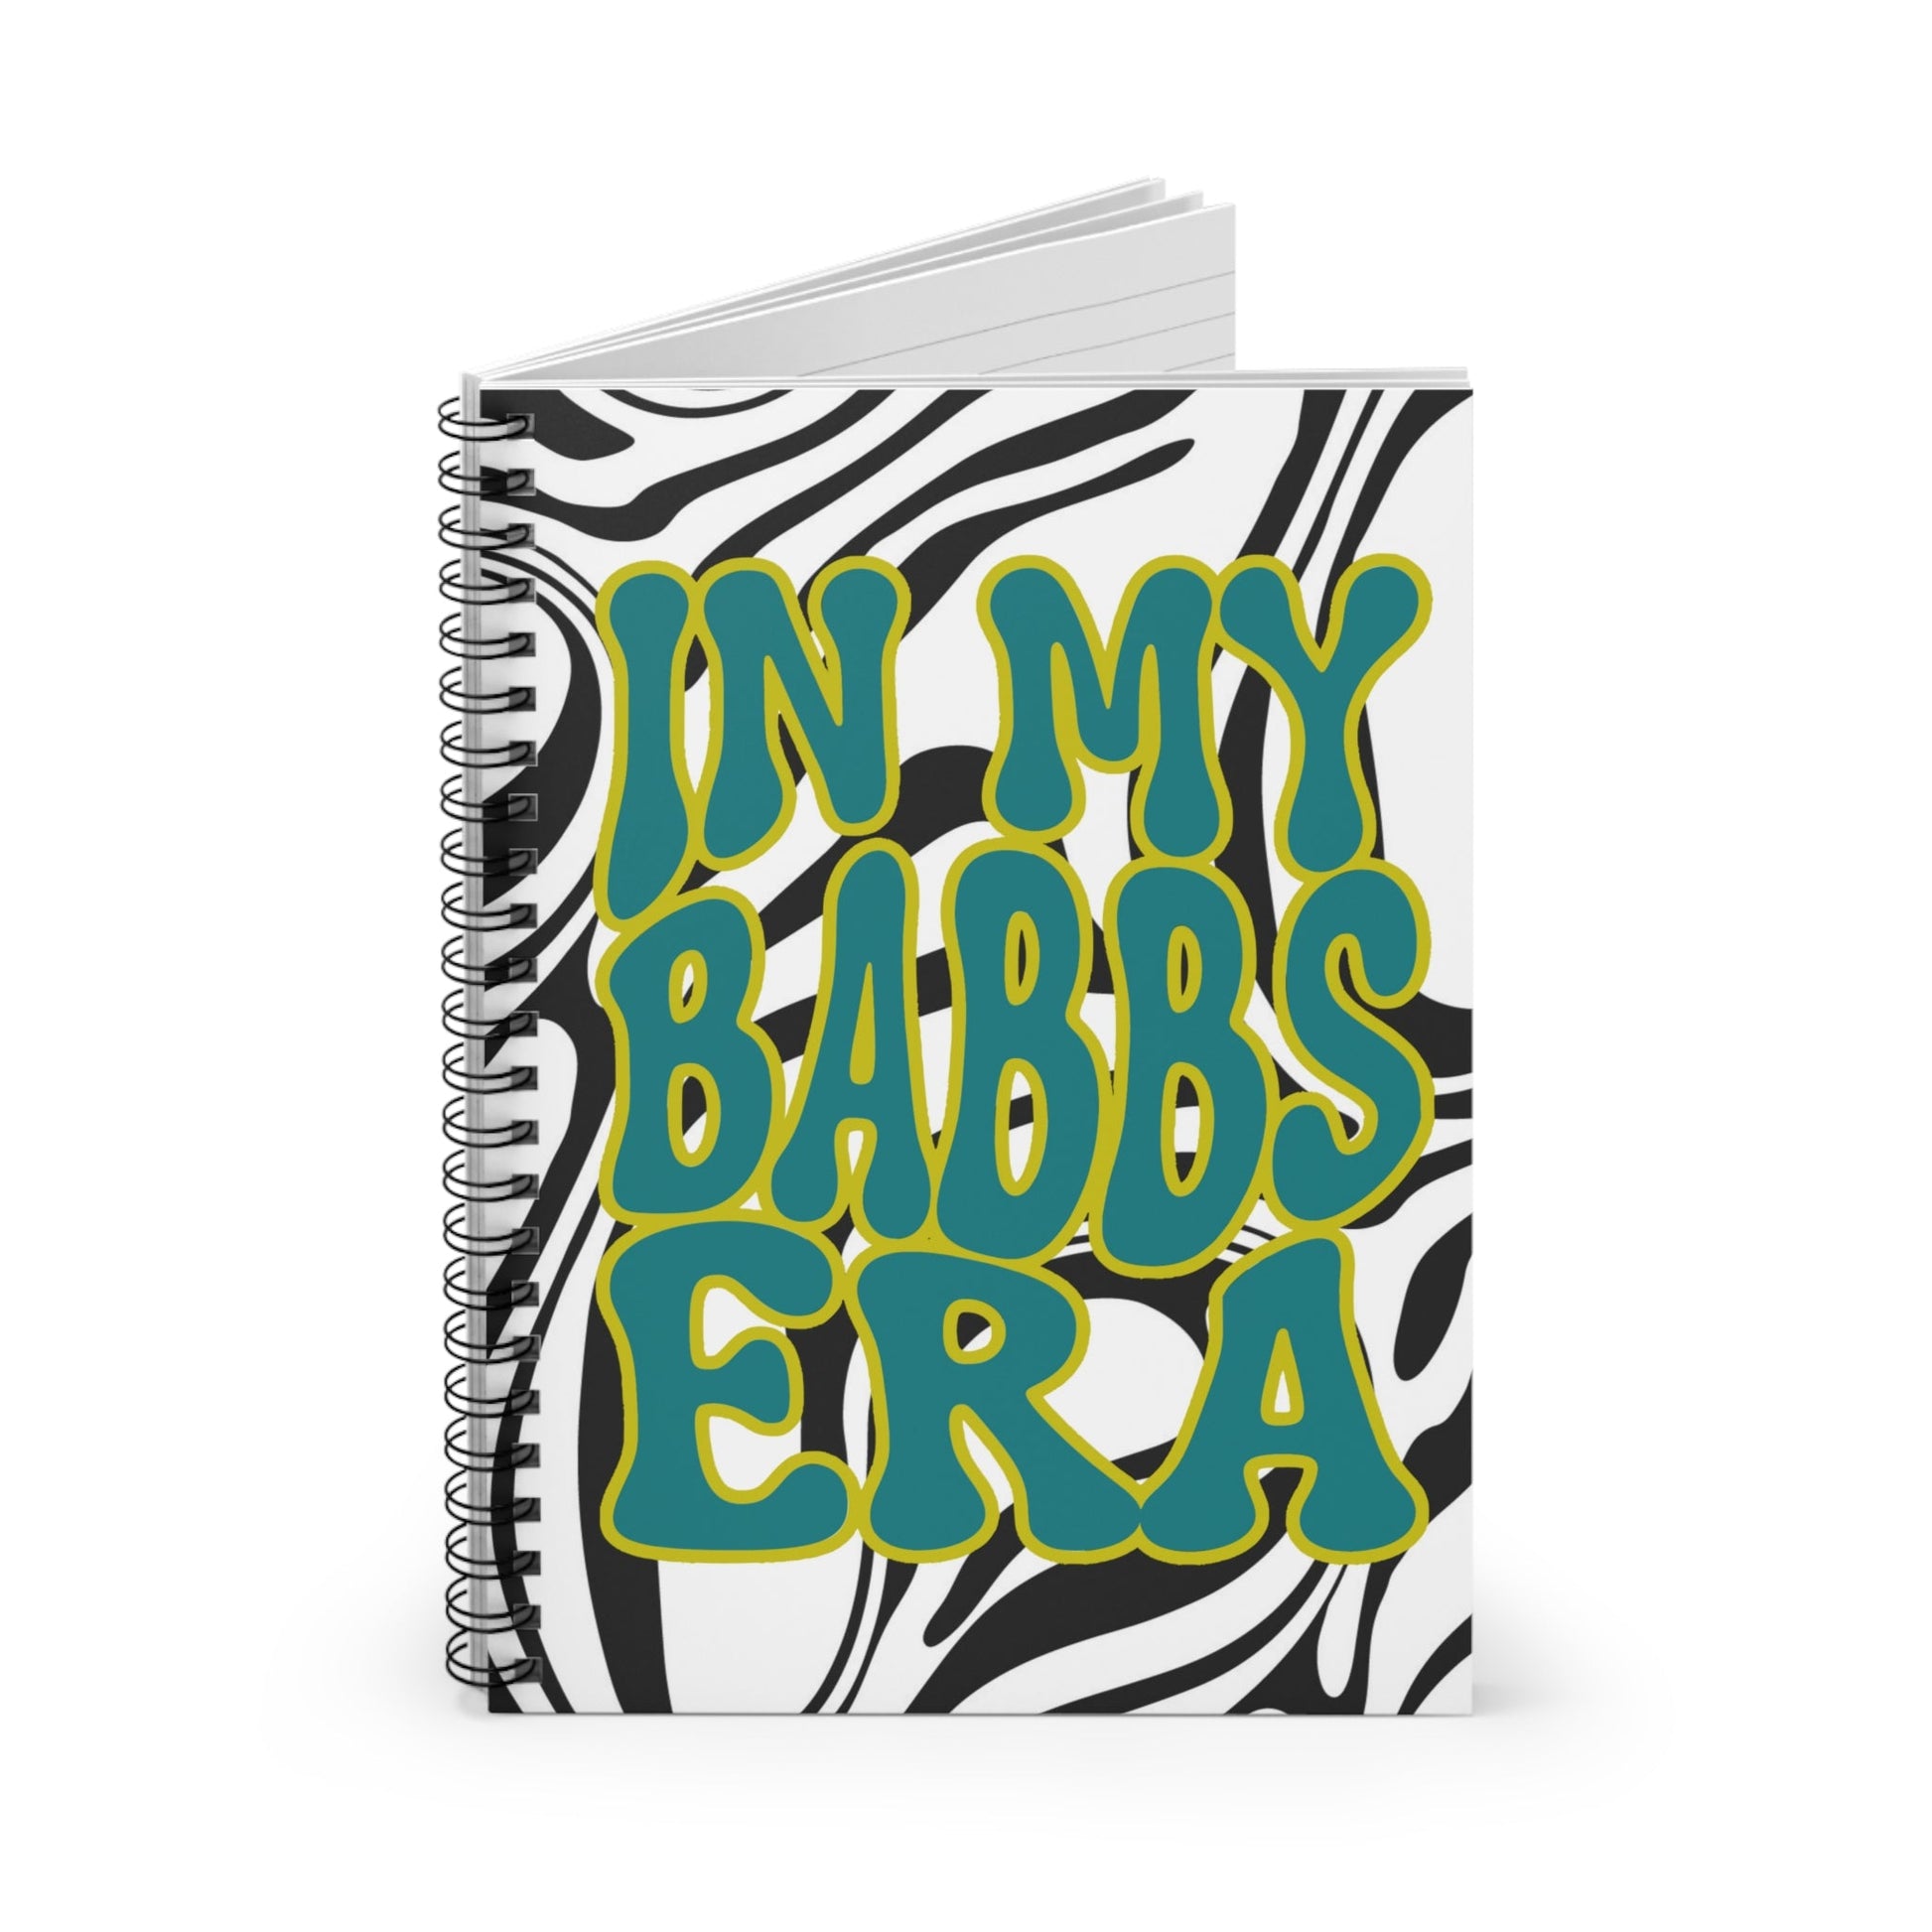 Babbs Era Spiral Notebook - Ruled Line - LOUD